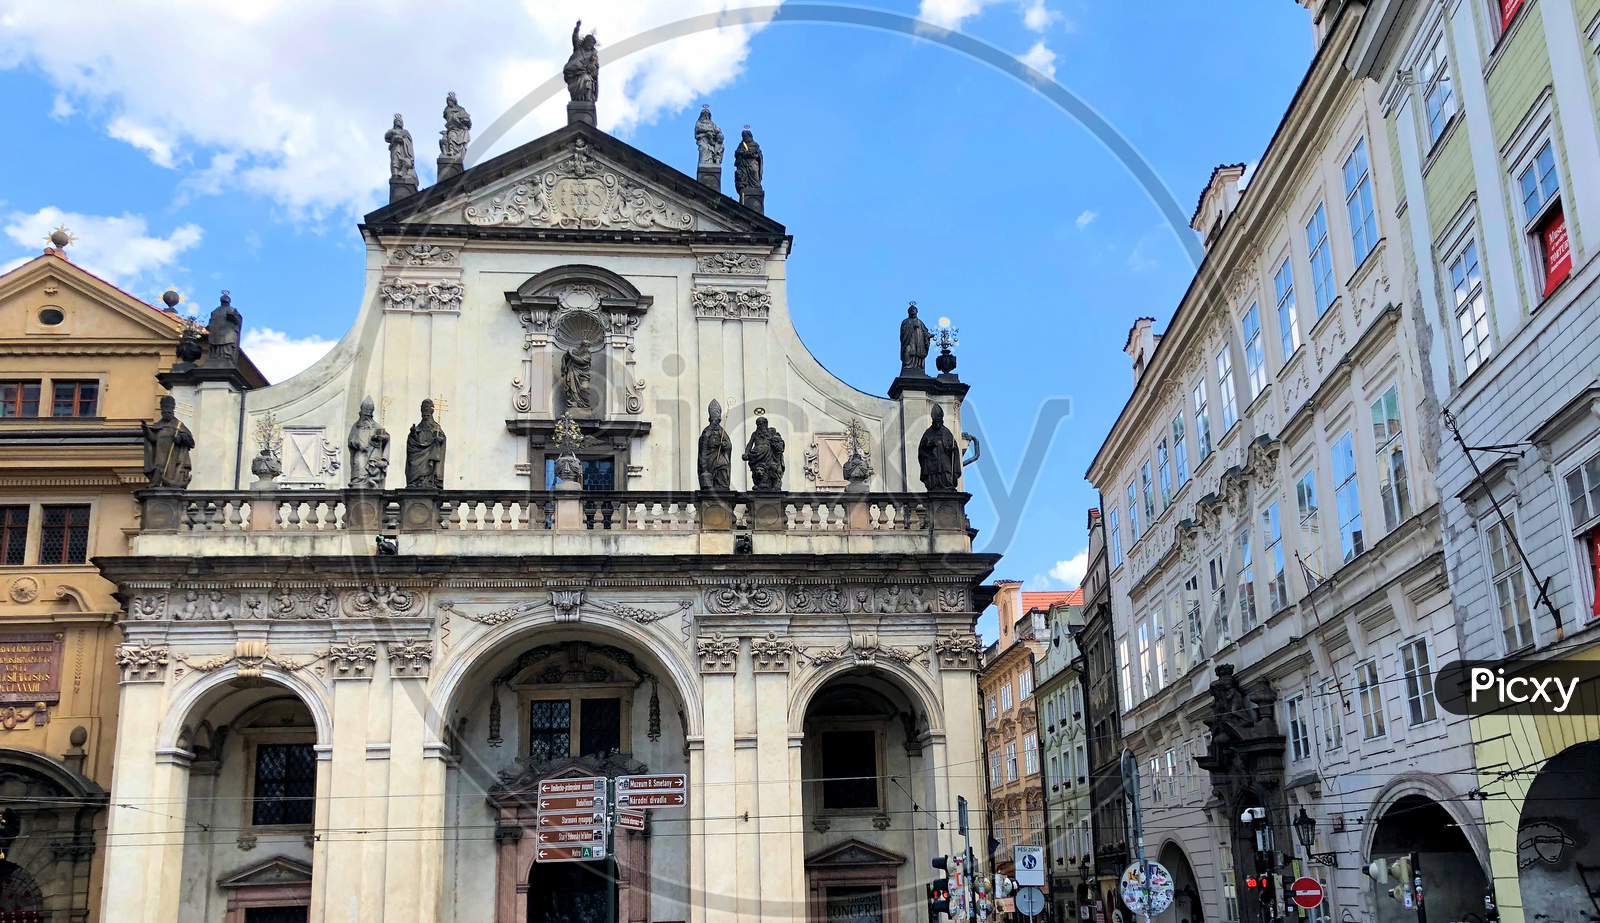 Catholic Church In The City Of Prague In Czech Republic 14.7.2018